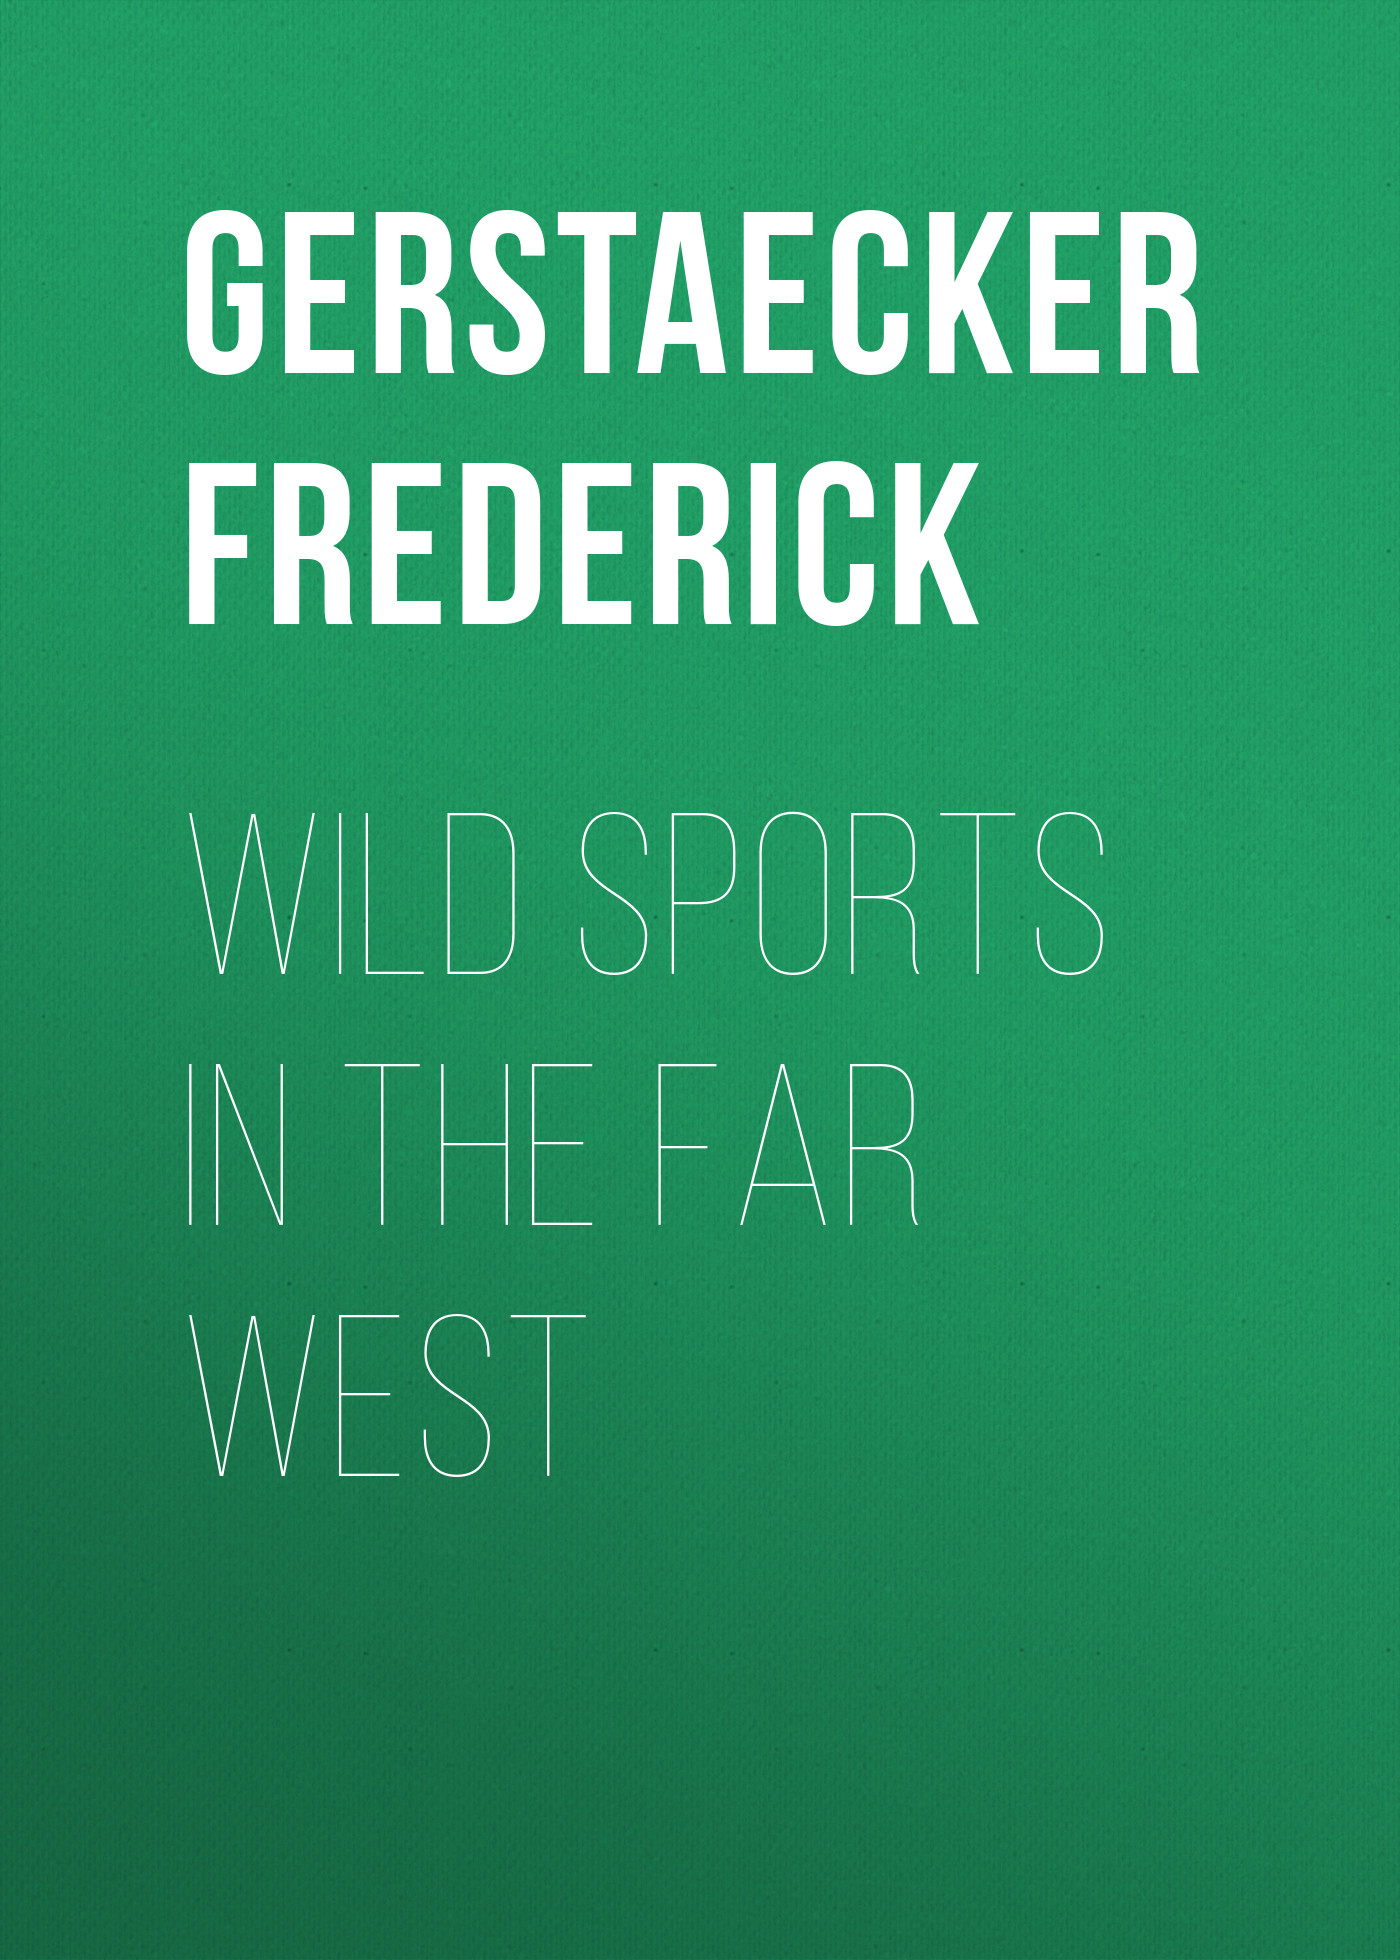 Gerstaecker Frederick Wild Sports In The Far West